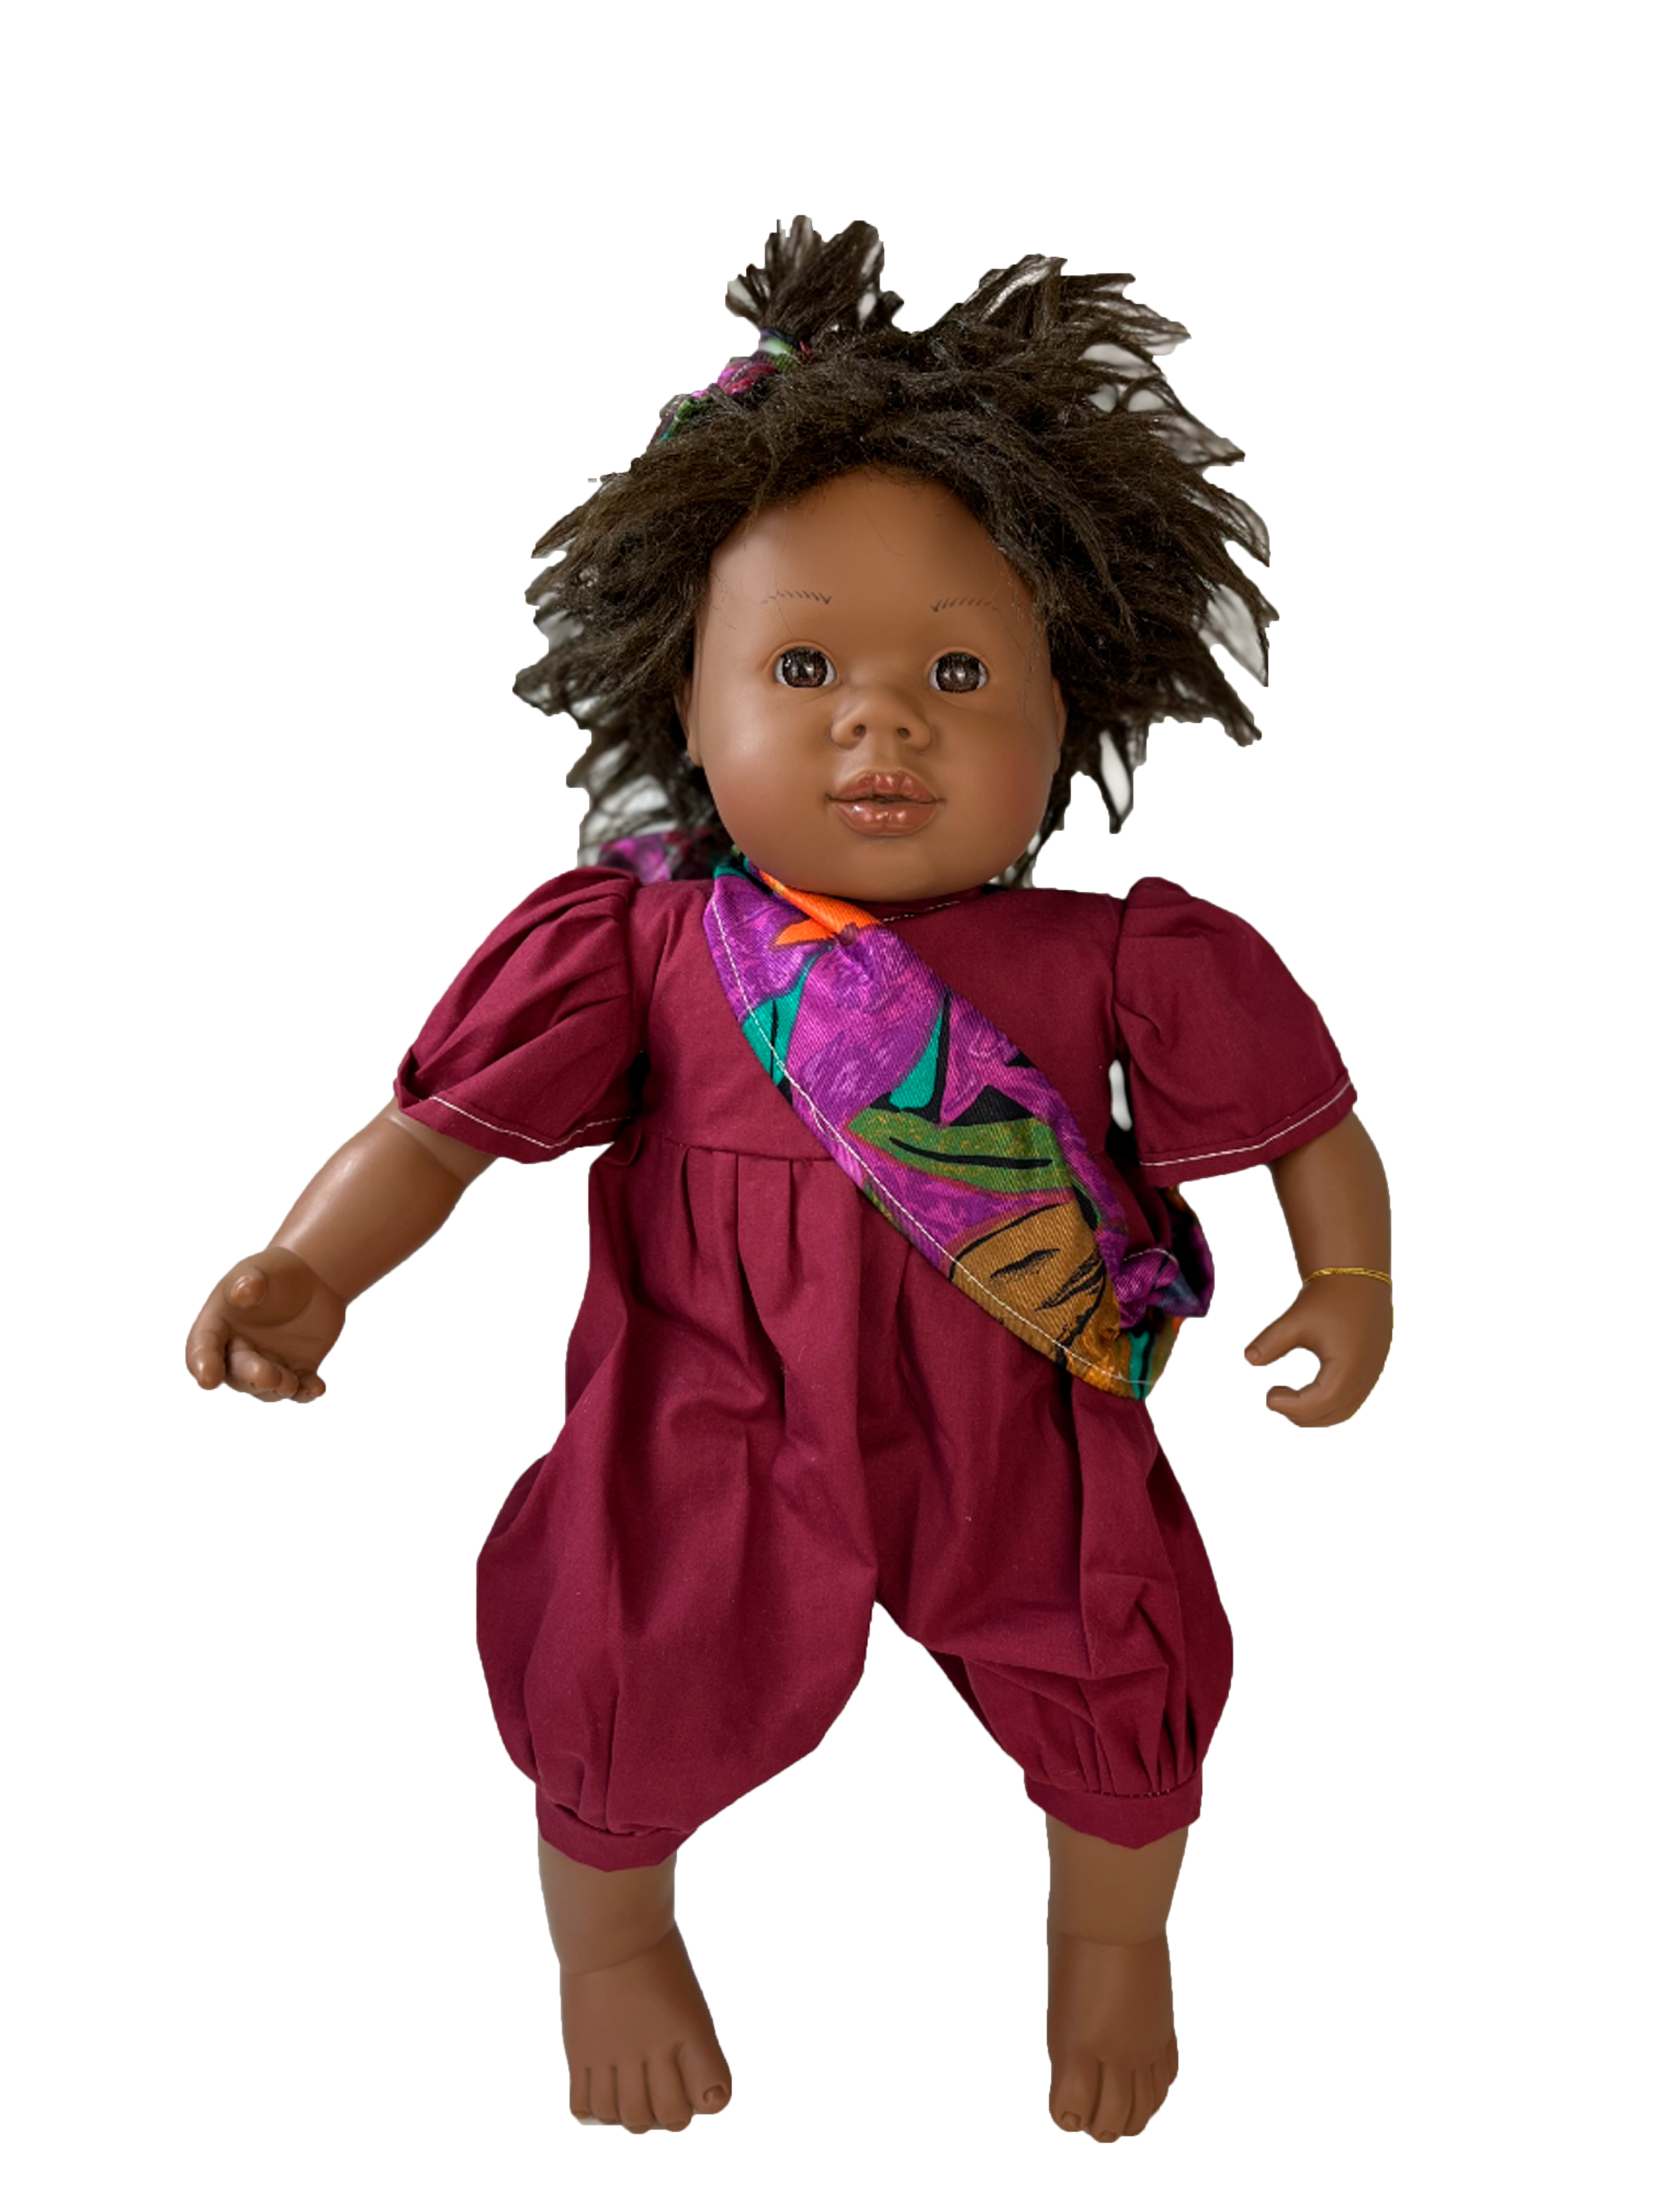 Кукла Carmen Gonzalez КоКо, 42 см, 10021 dnenes carmen gonzalez кукла коко 42 см 10021